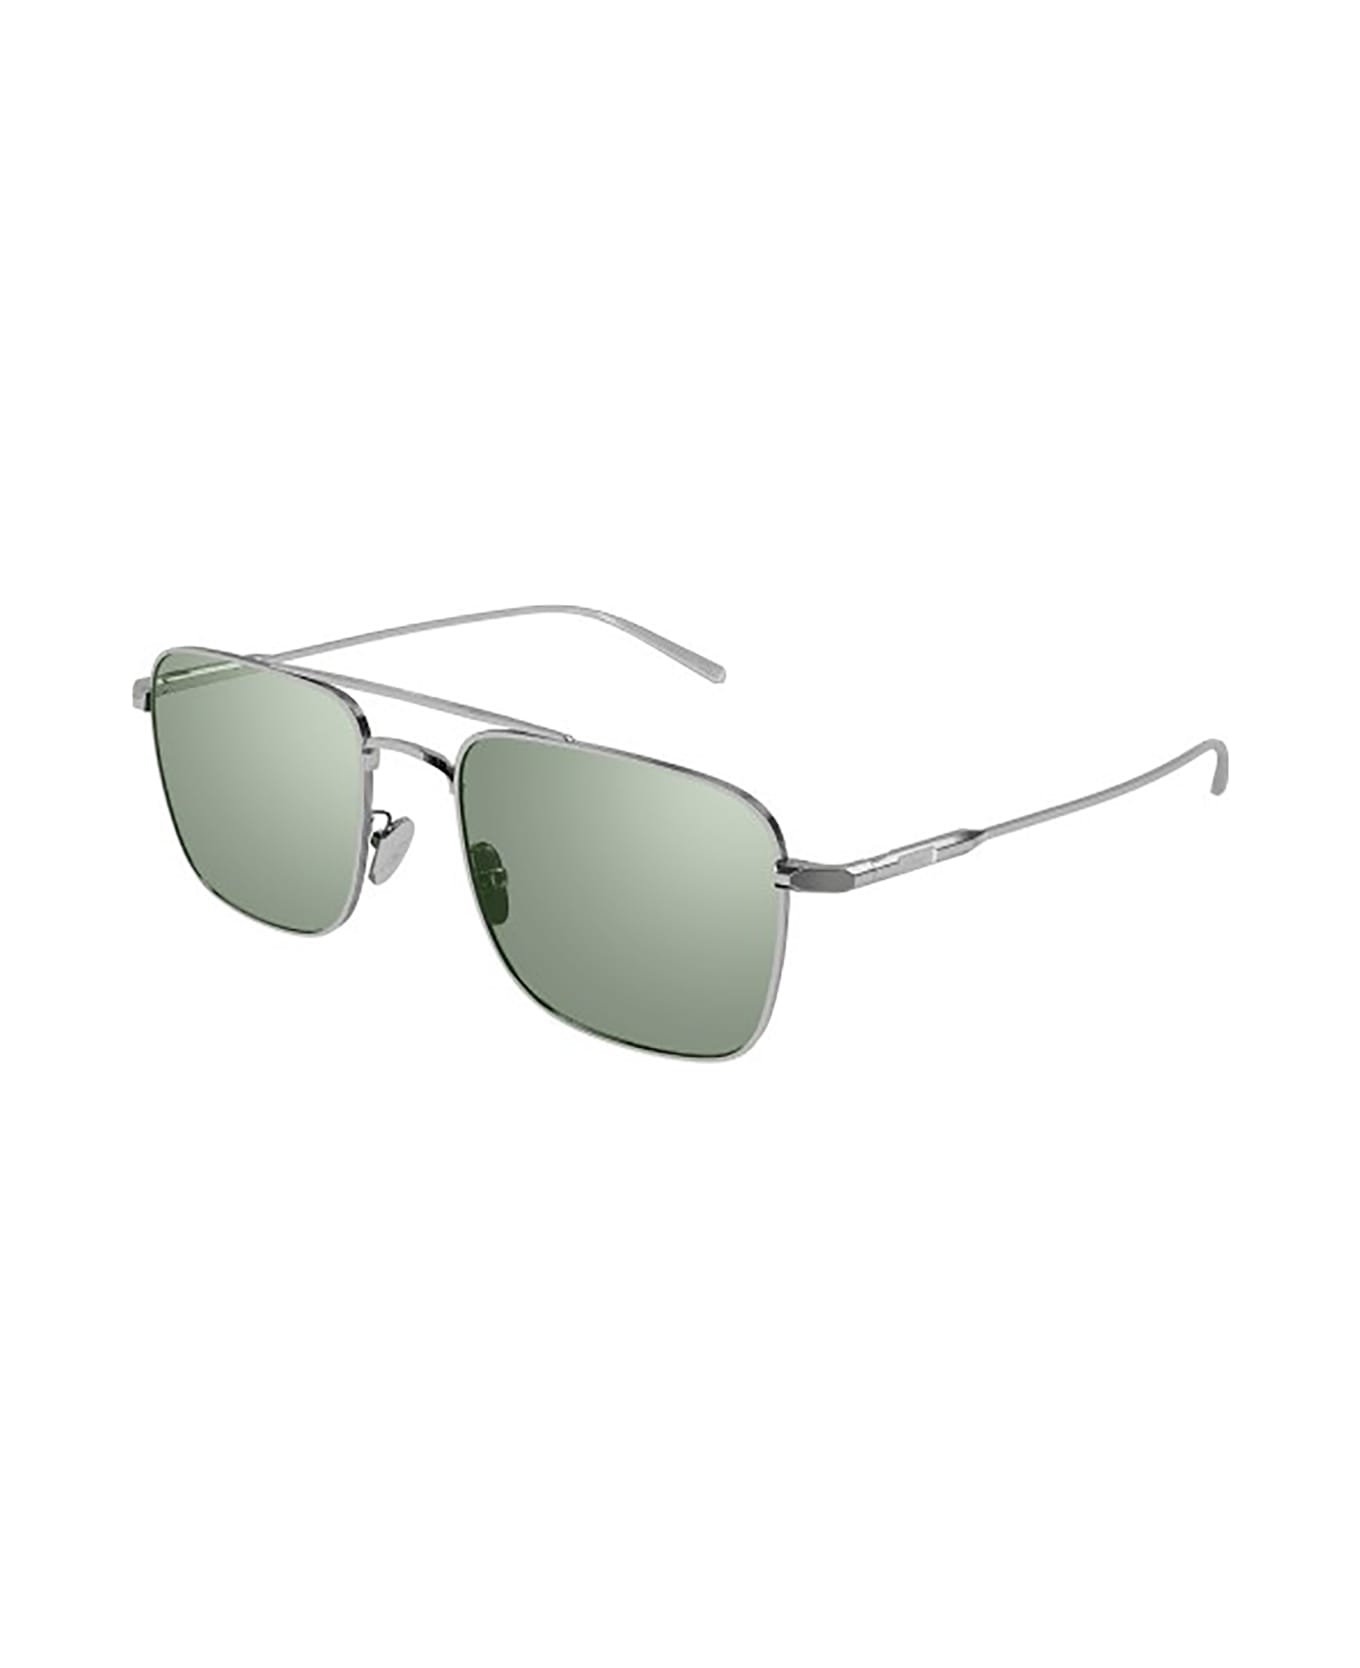 Brioni BR0101S Sunglasses - Silver Silver Green サングラス